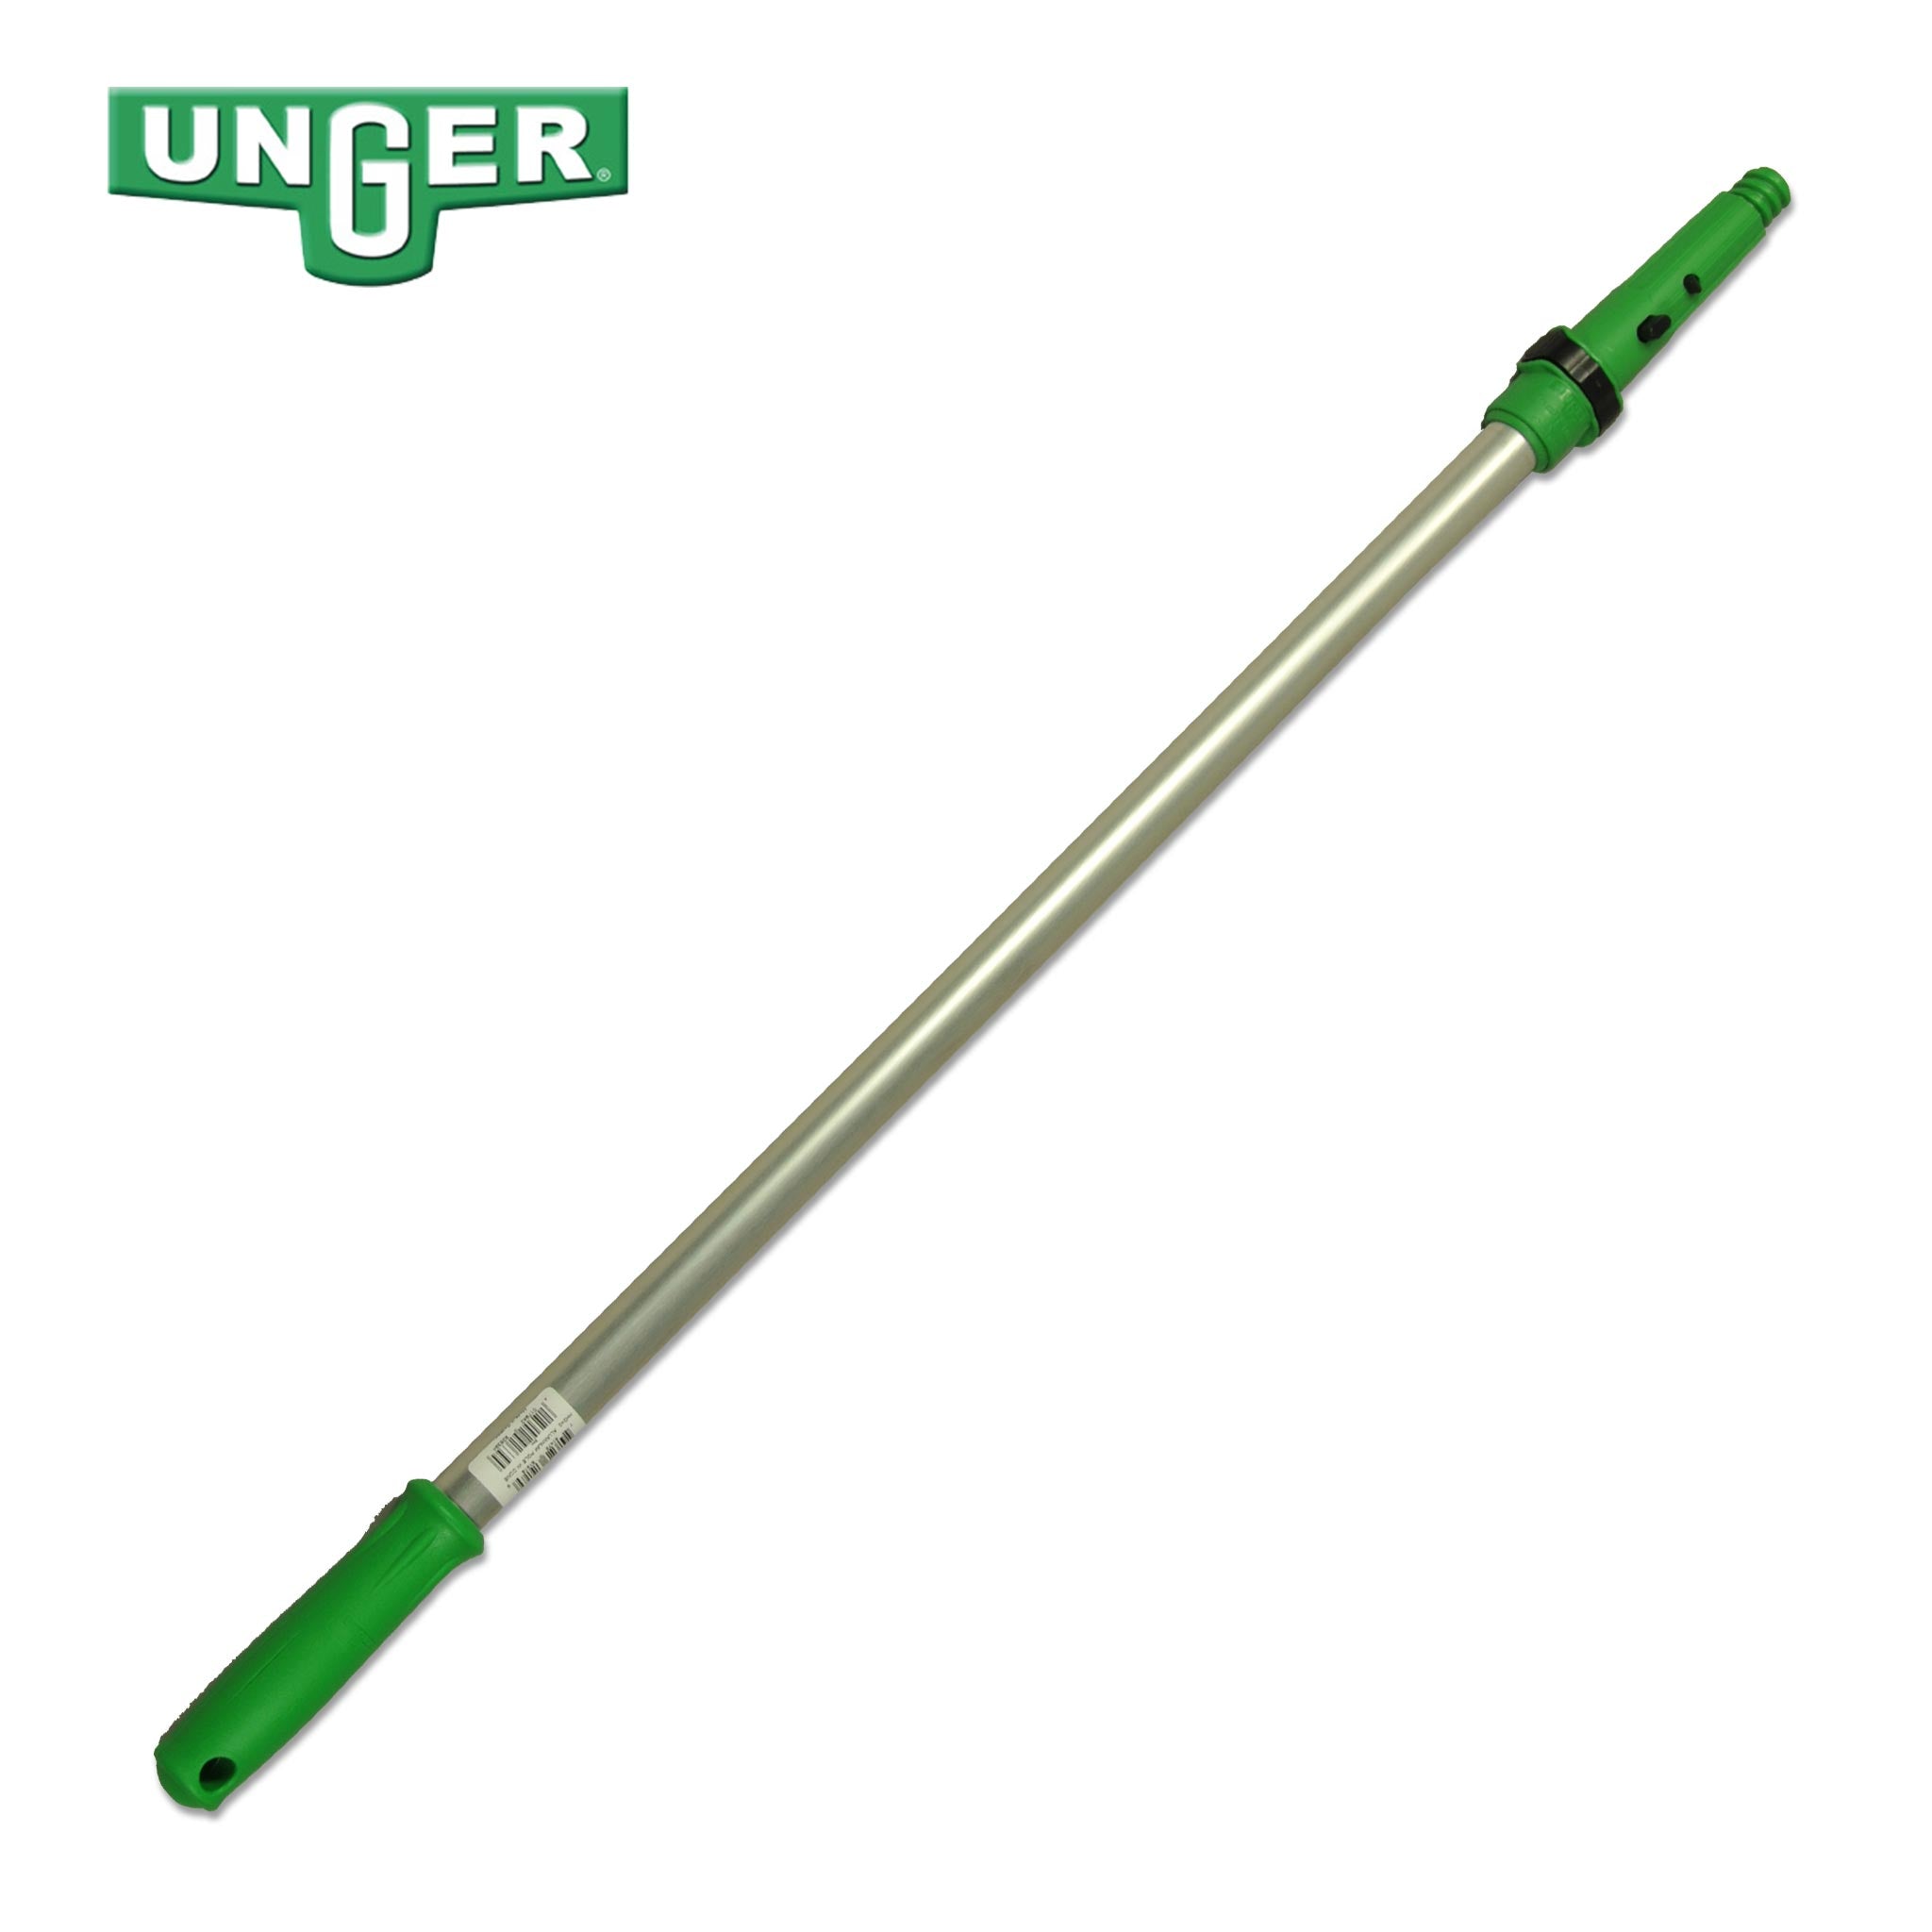 Unger Single Section Pole - 60cm